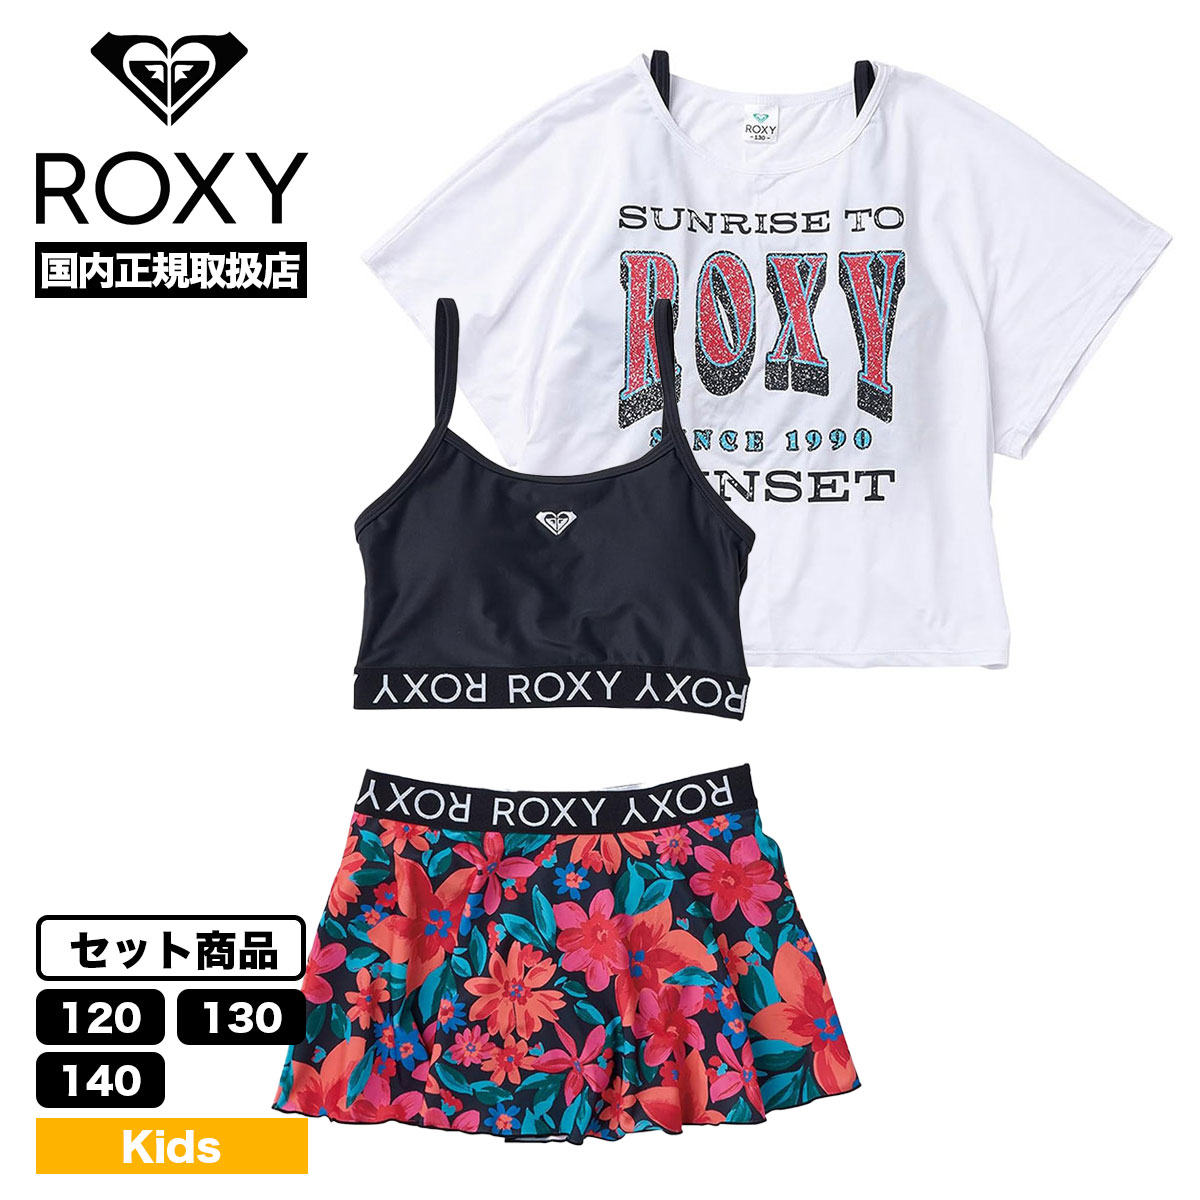 ROXY キッズ 女の子 水着 3点セット ビキニ ショーツスカート Tシャツ 110 120 13...